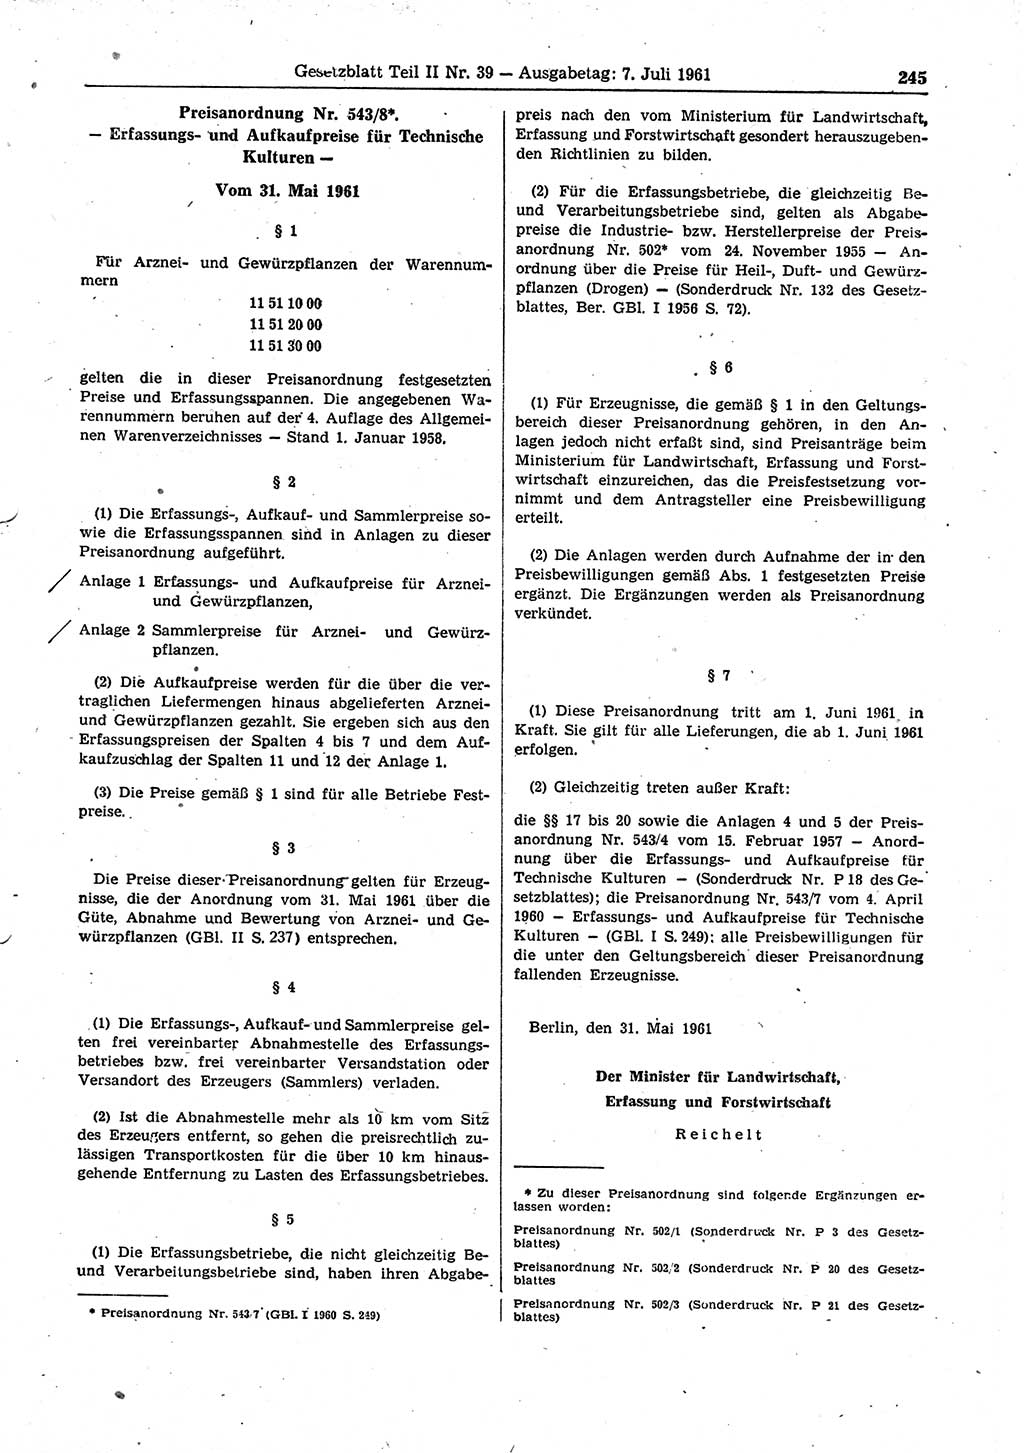 Gesetzblatt (GBl.) der Deutschen Demokratischen Republik (DDR) Teil ⅠⅠ 1961, Seite 245 (GBl. DDR ⅠⅠ 1961, S. 245)